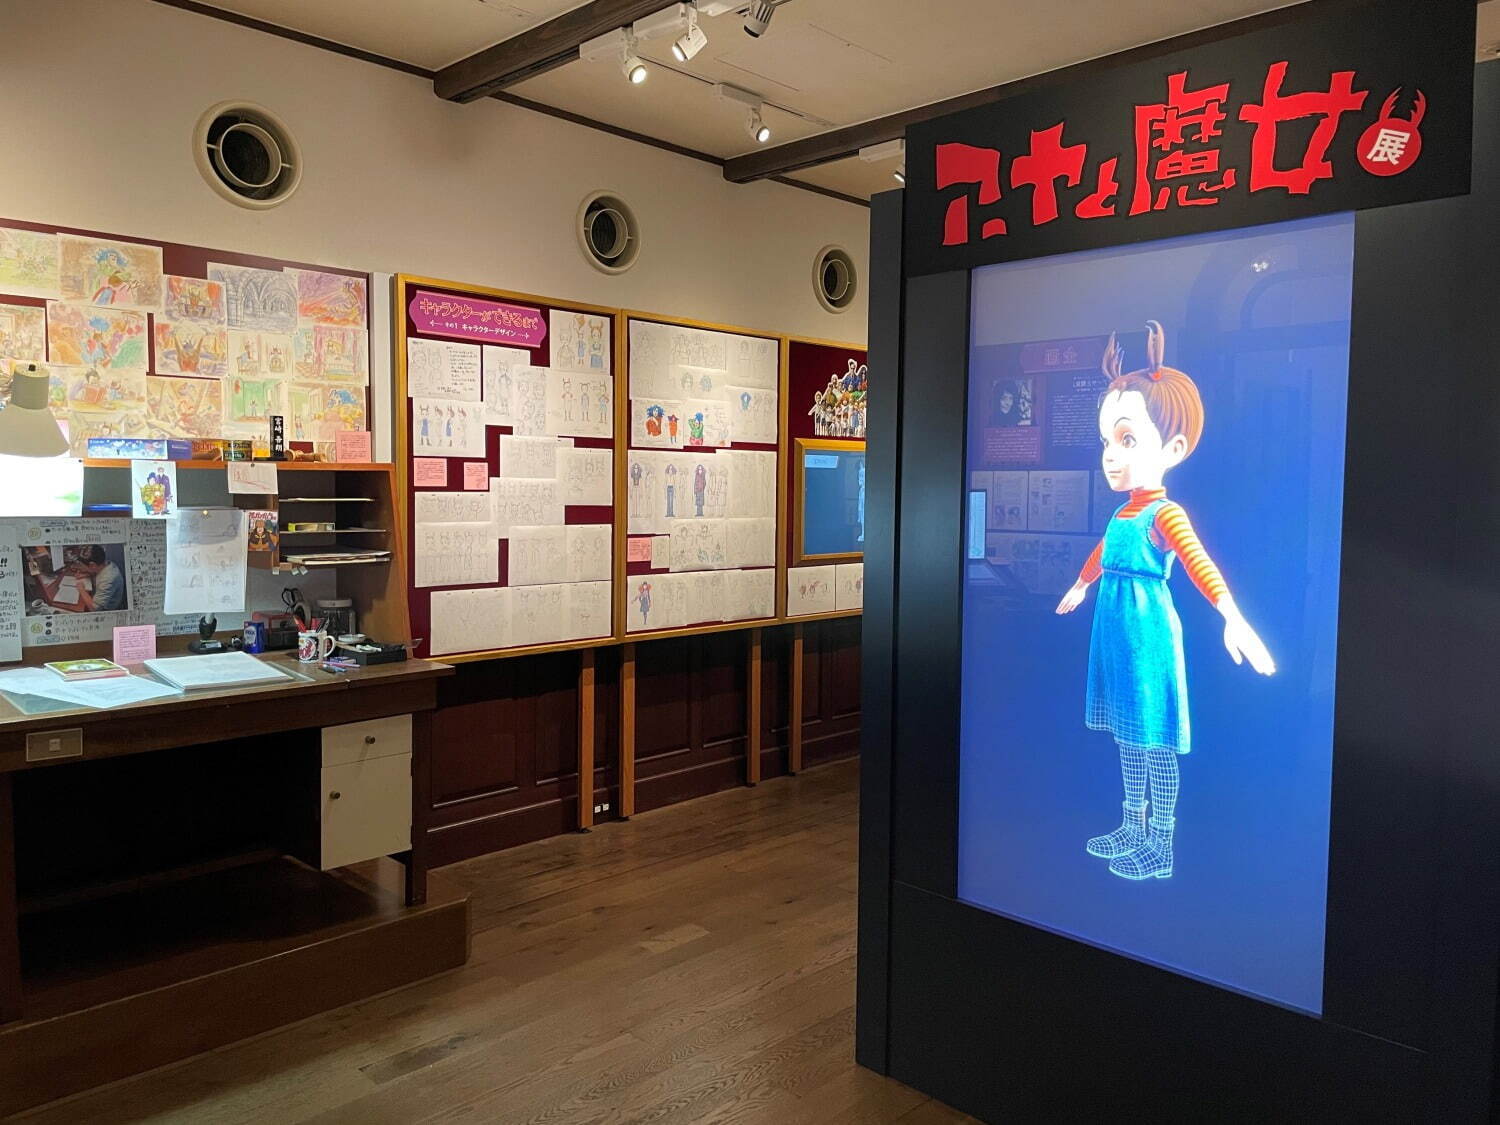 東京都内のおすすめ展覧会スケジュール2021〈開始日順〉美術館・博物館での開催情報 | 写真